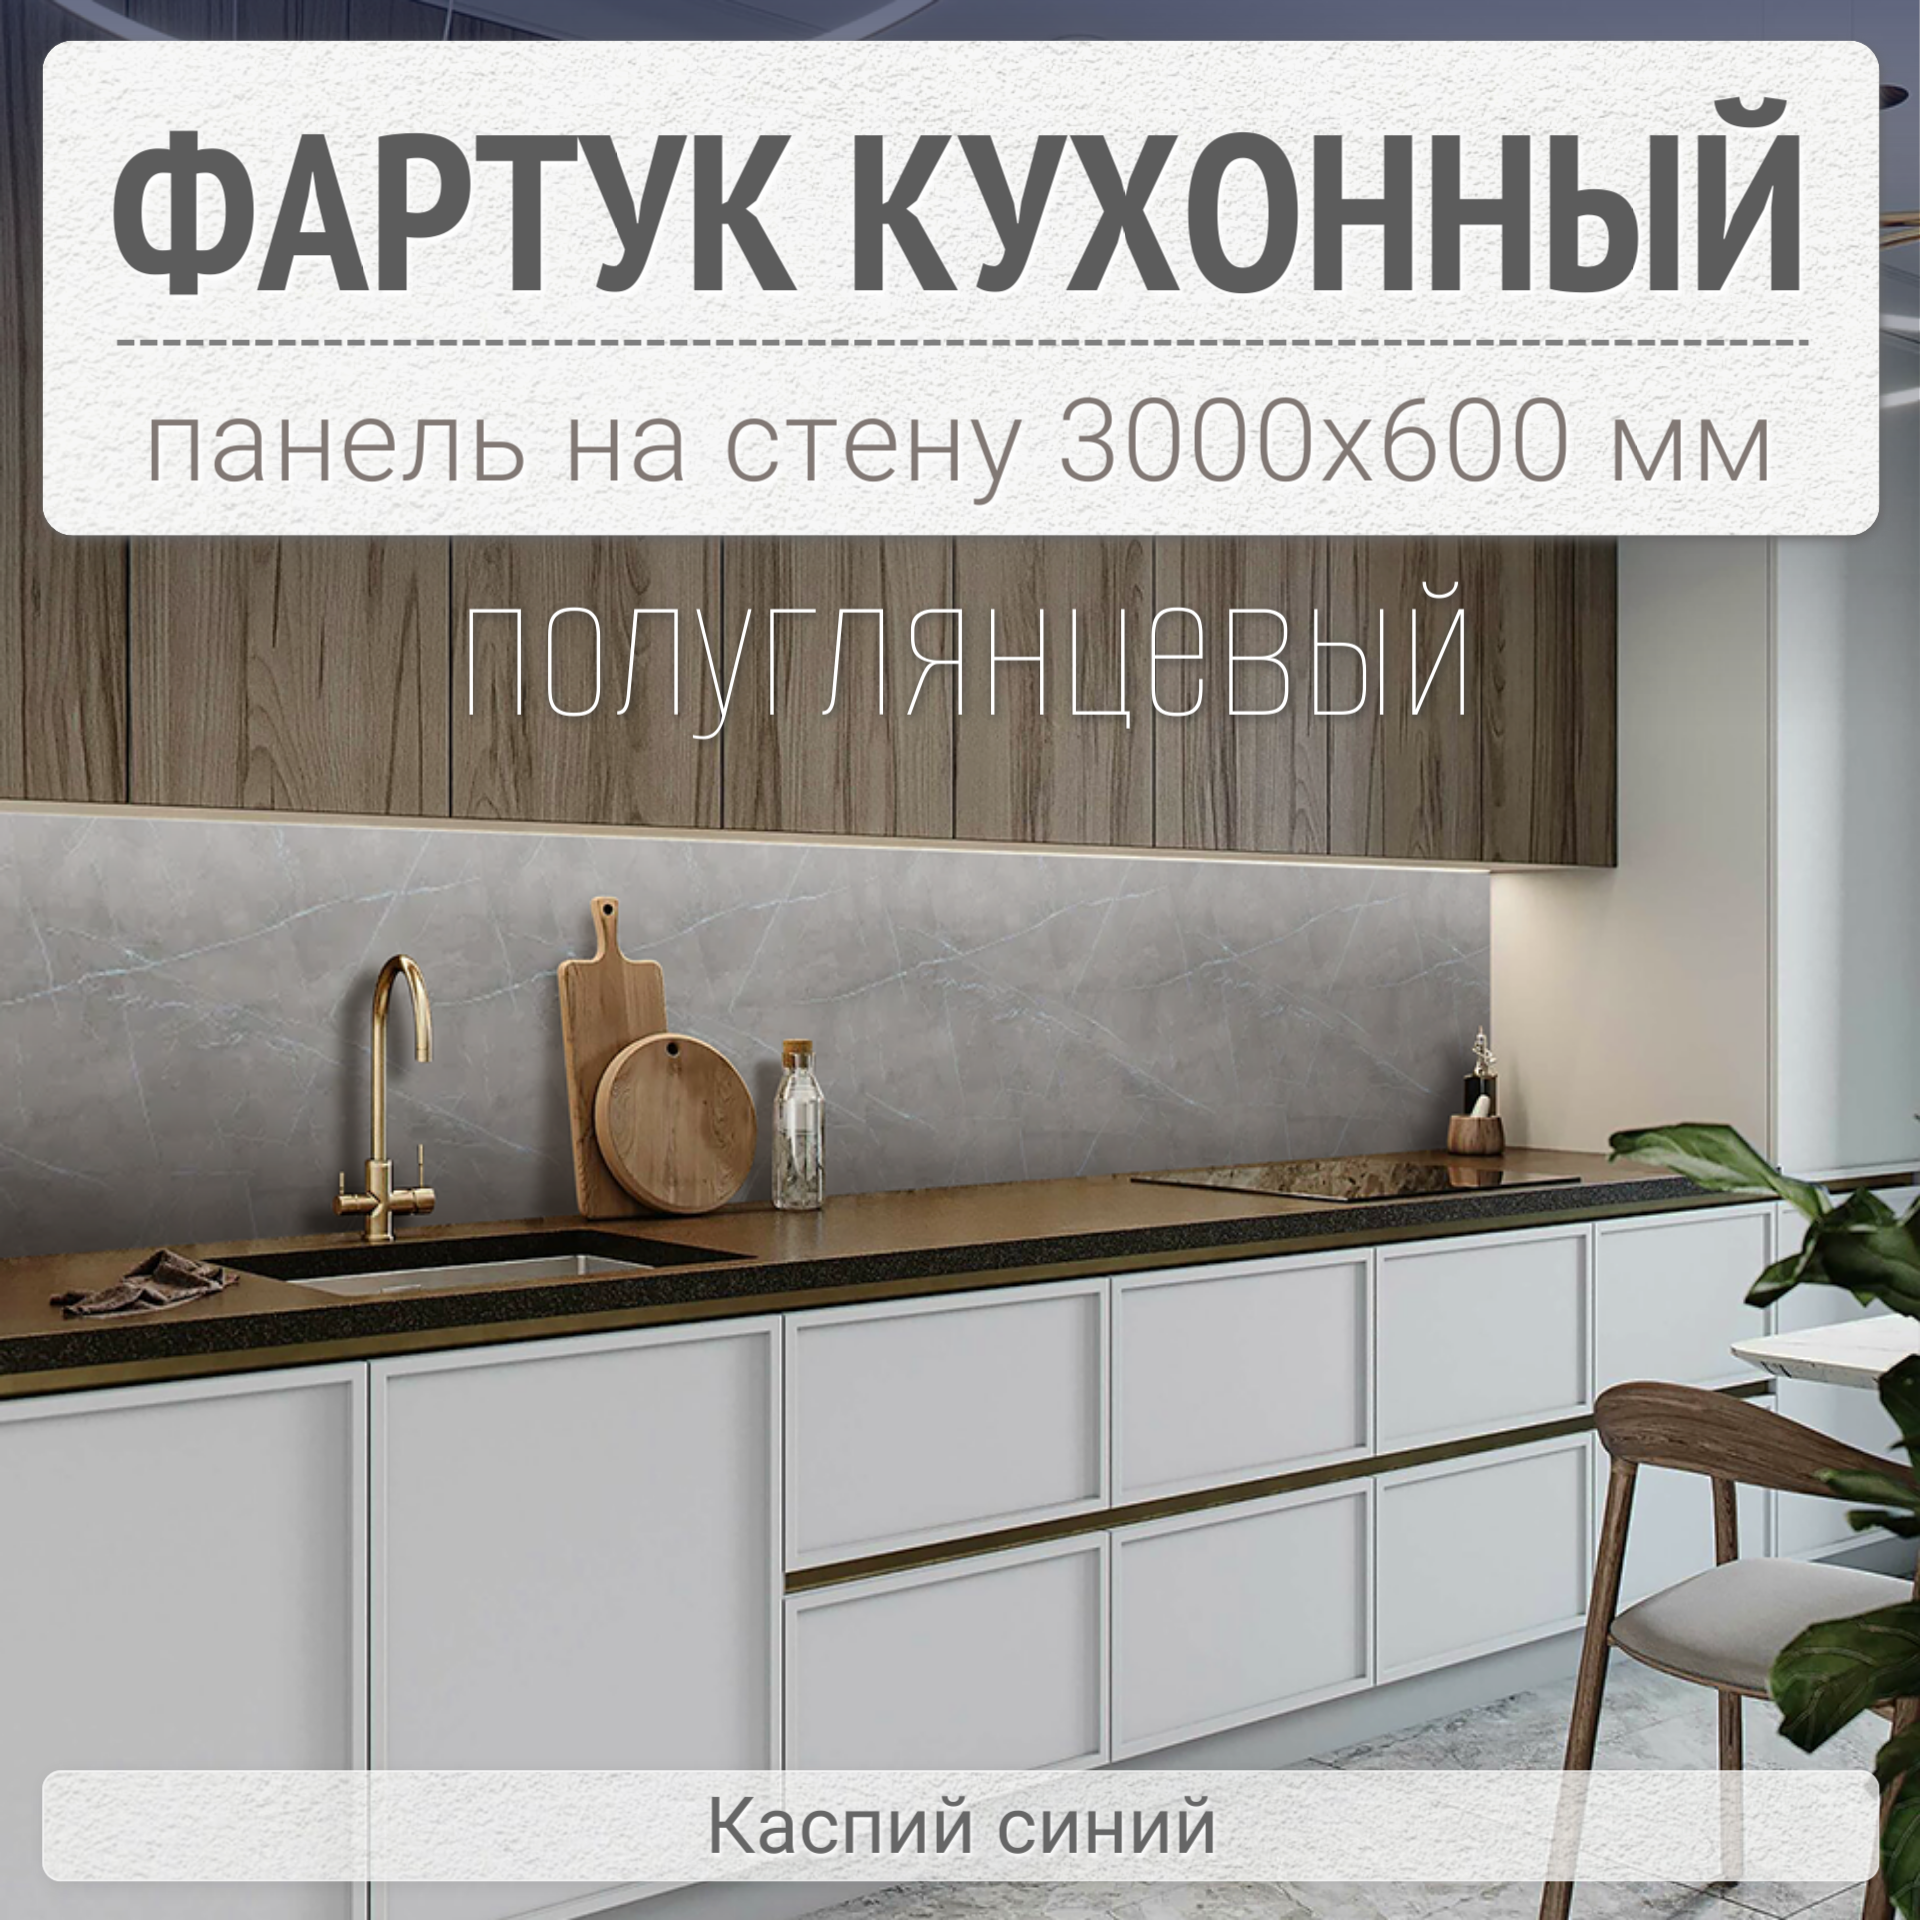 Фартук для кухни на стену 3000х600 мм, Каспий синий